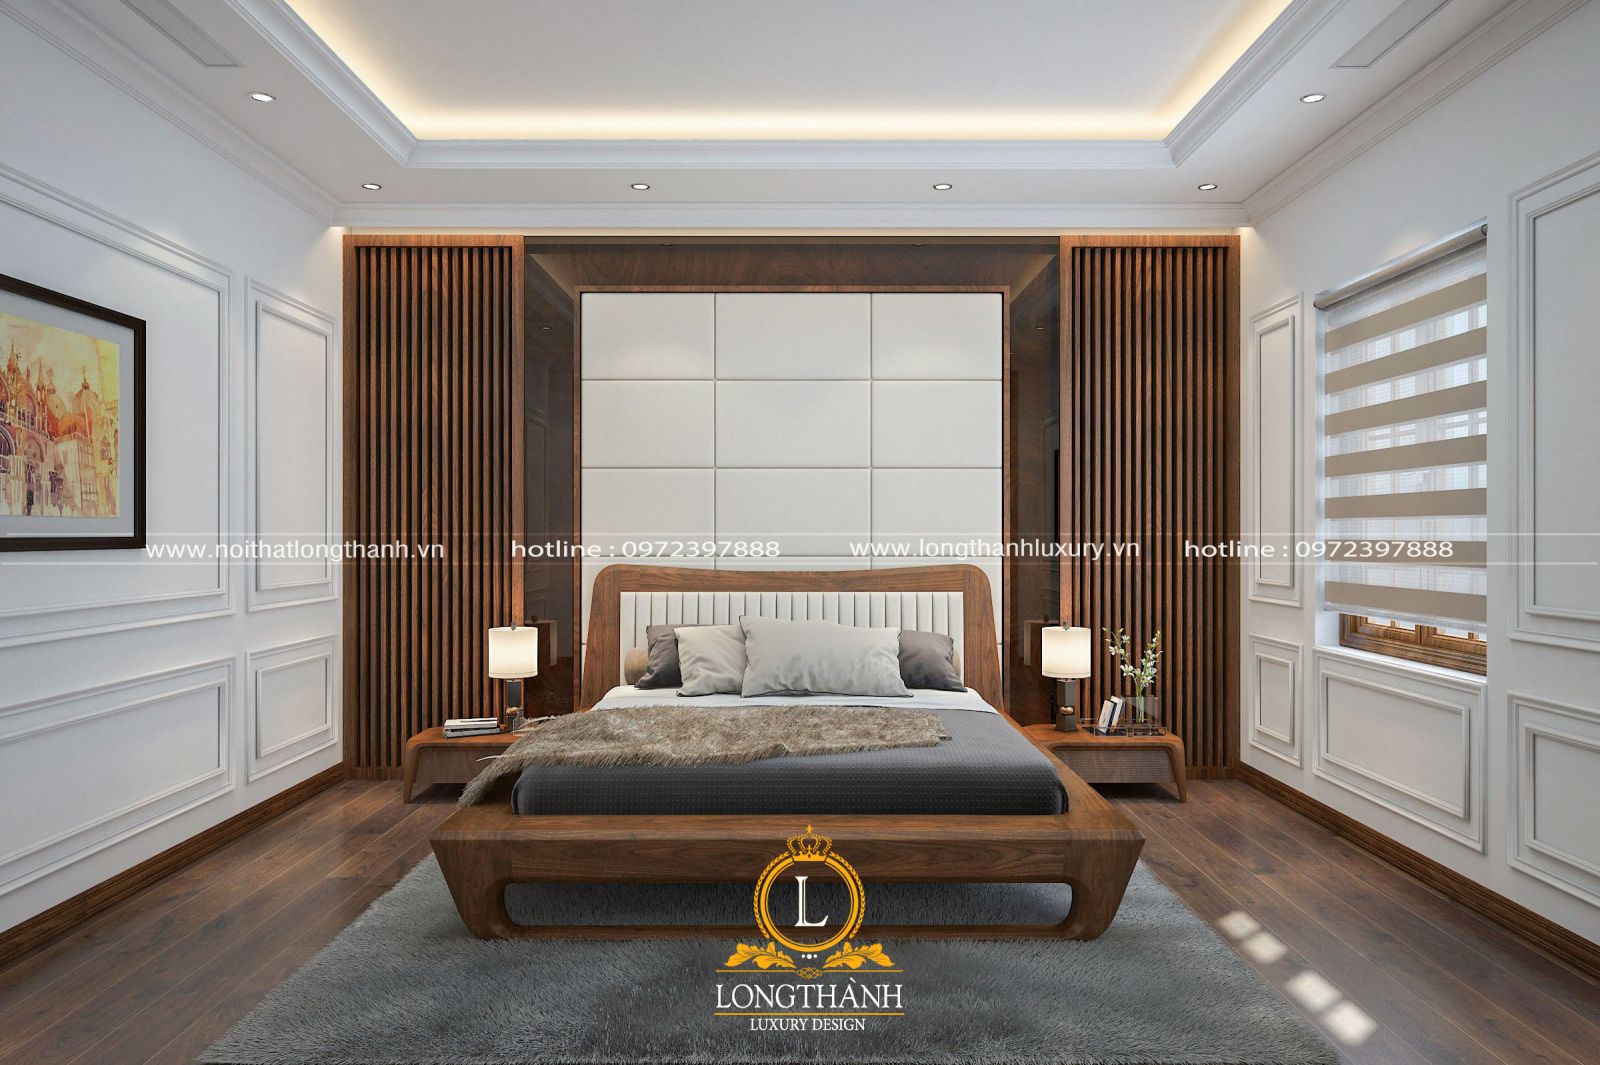 Mẫu phòng ngủ hiện đại được thiết kế phù hợp nhu cầu sử dụng